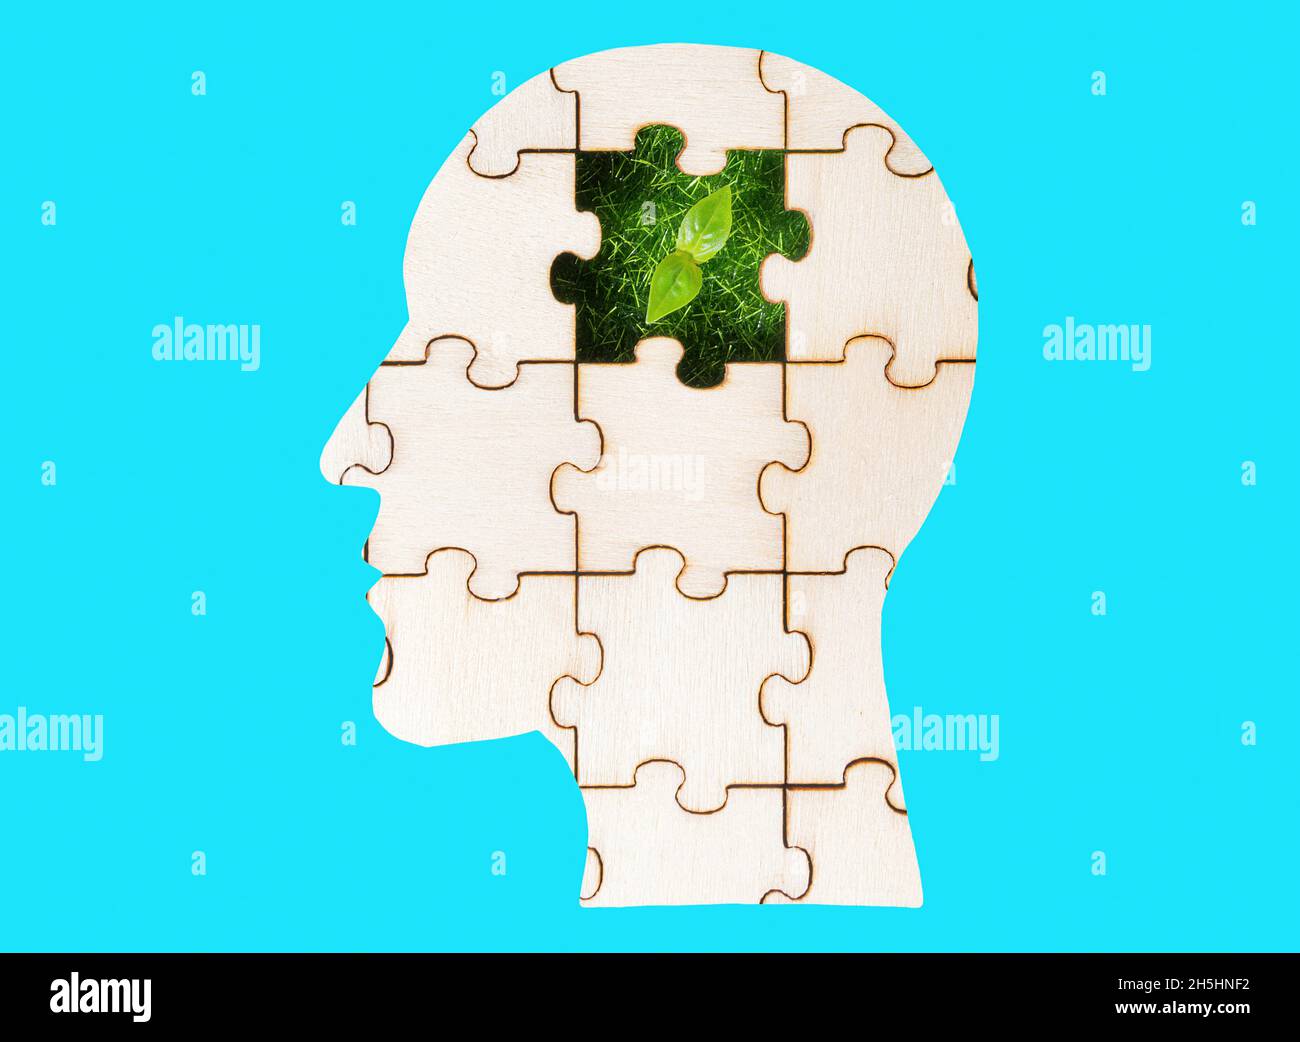 Puzzle à tête humaine avec un sprout vert traversant la pièce manquante isolée sur fond bleu.Planter des idées dans l'esprit de quelqu'un. Banque D'Images